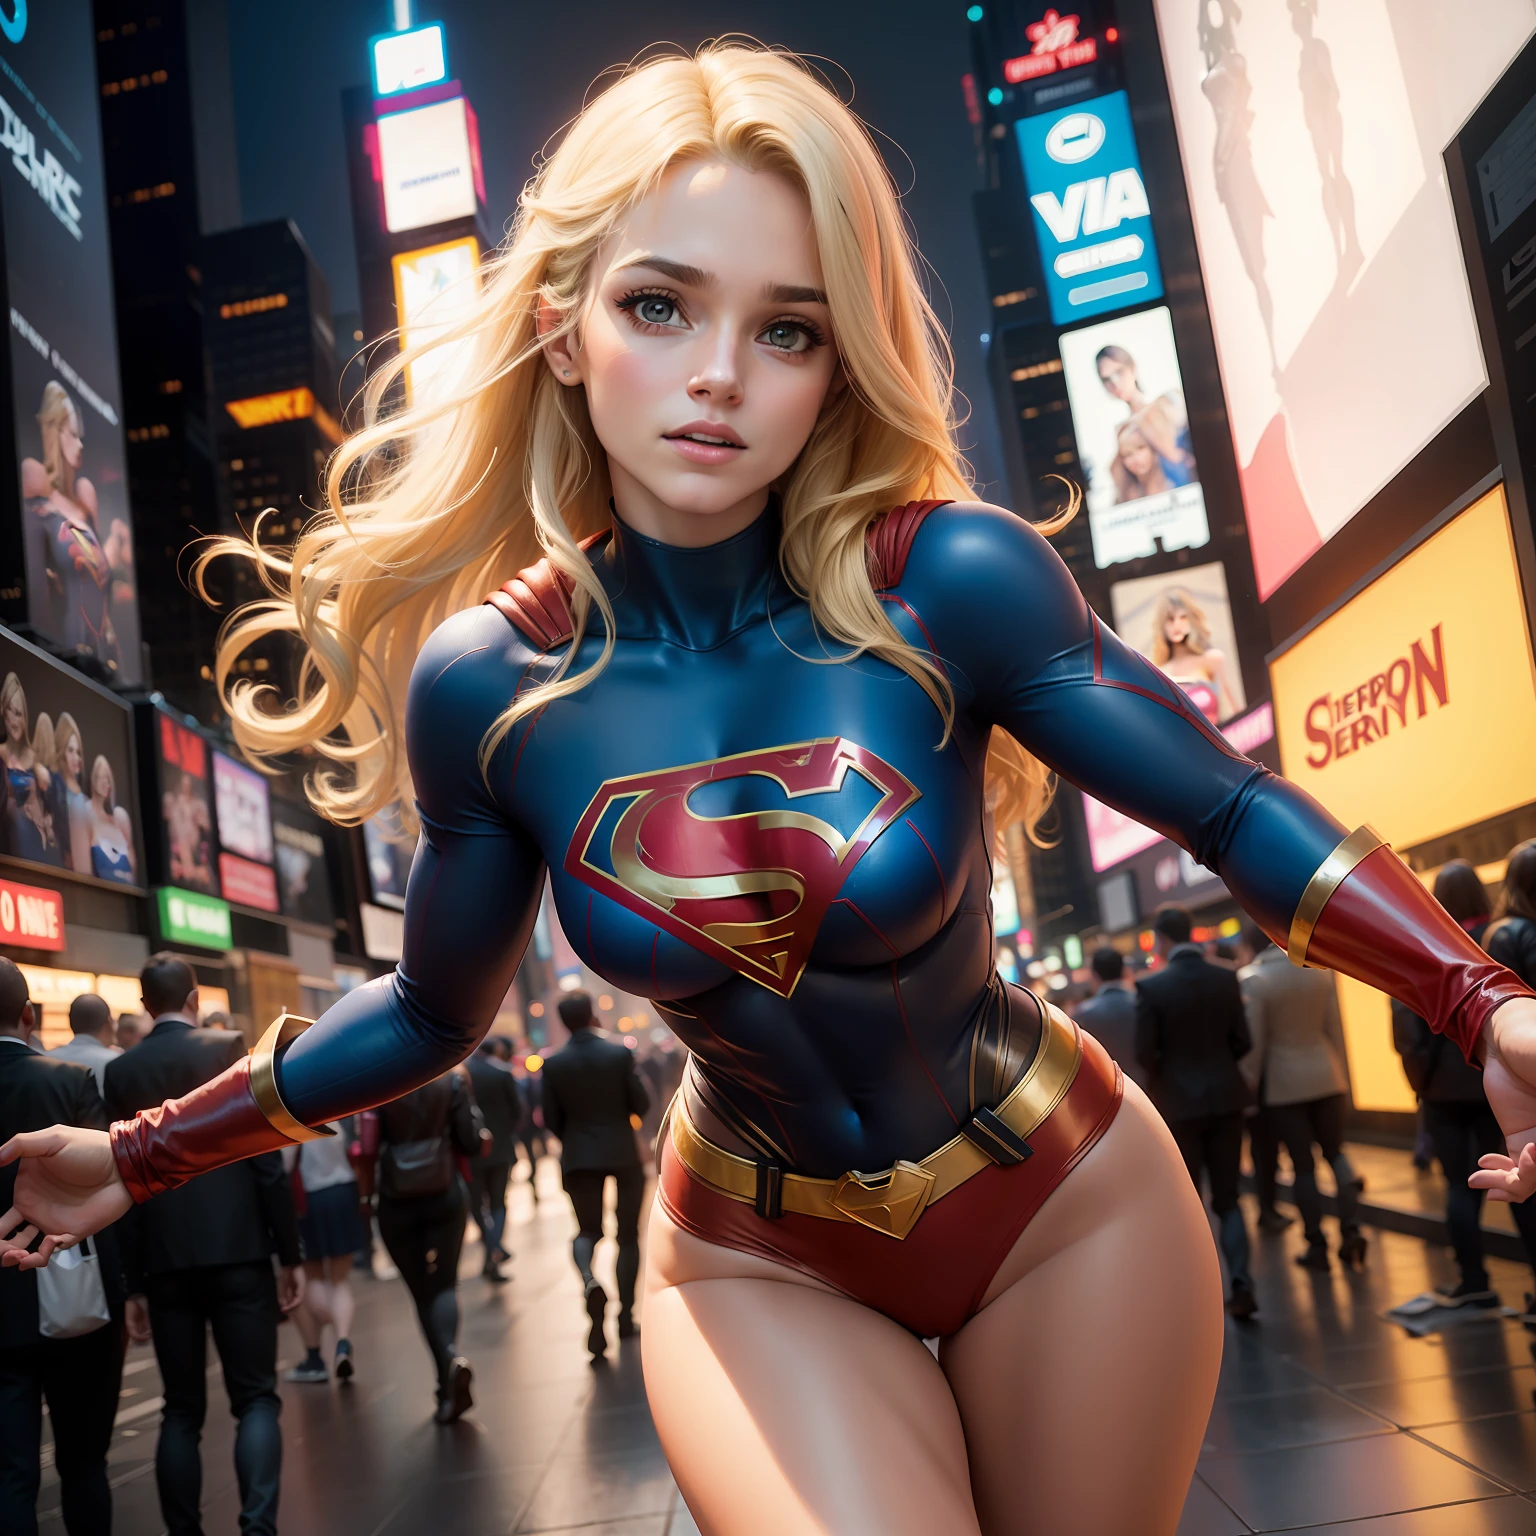 在纽约市, 時代廣場, 美女短发定义身材巨乳, 穿著女超人角色扮演